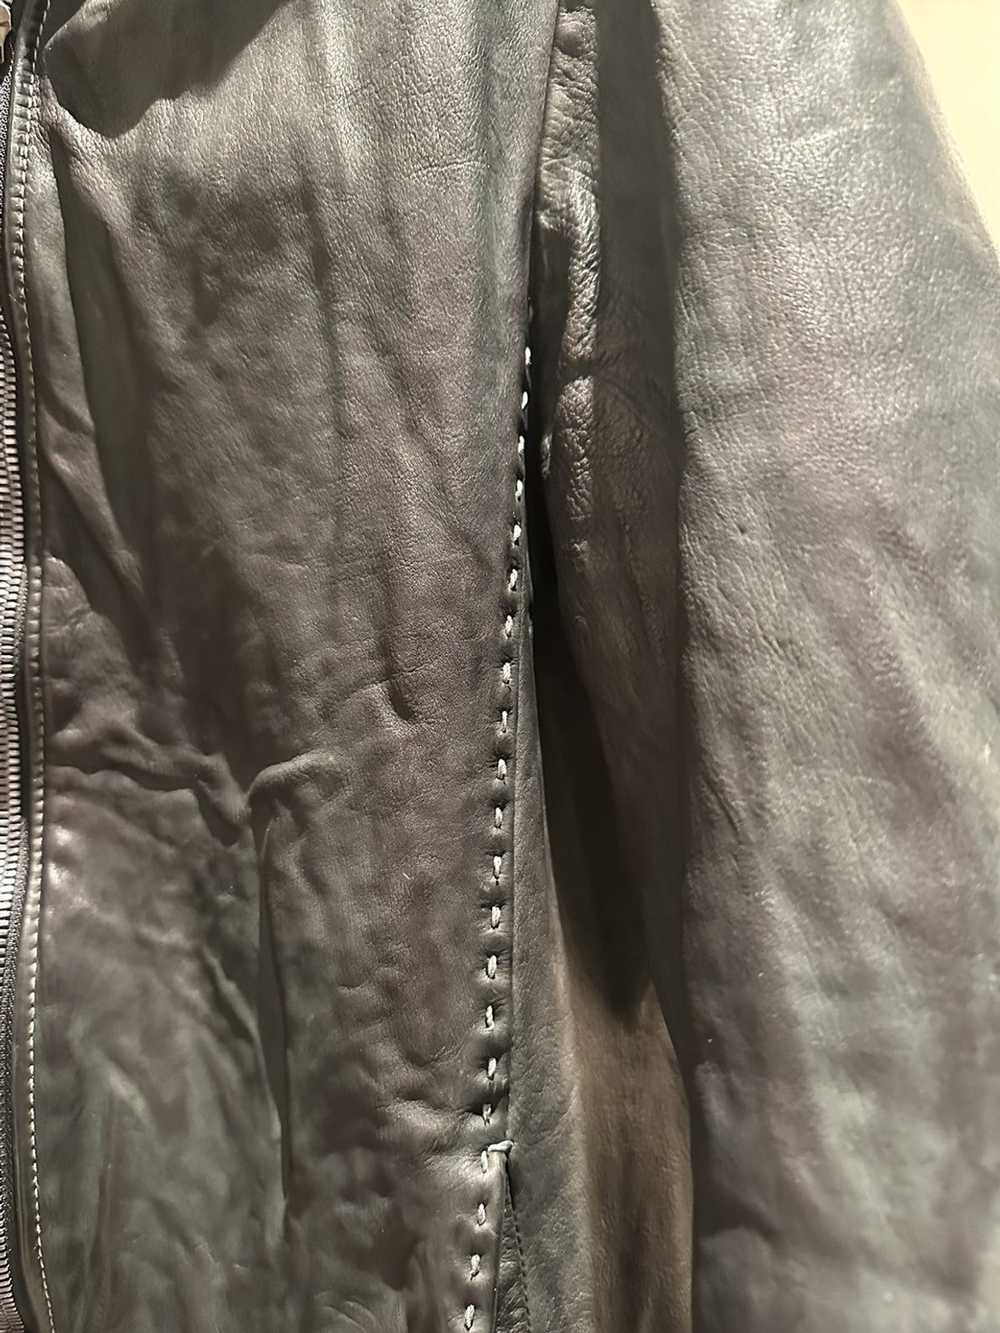 Incarnation Incarnation leather jacket - image 9